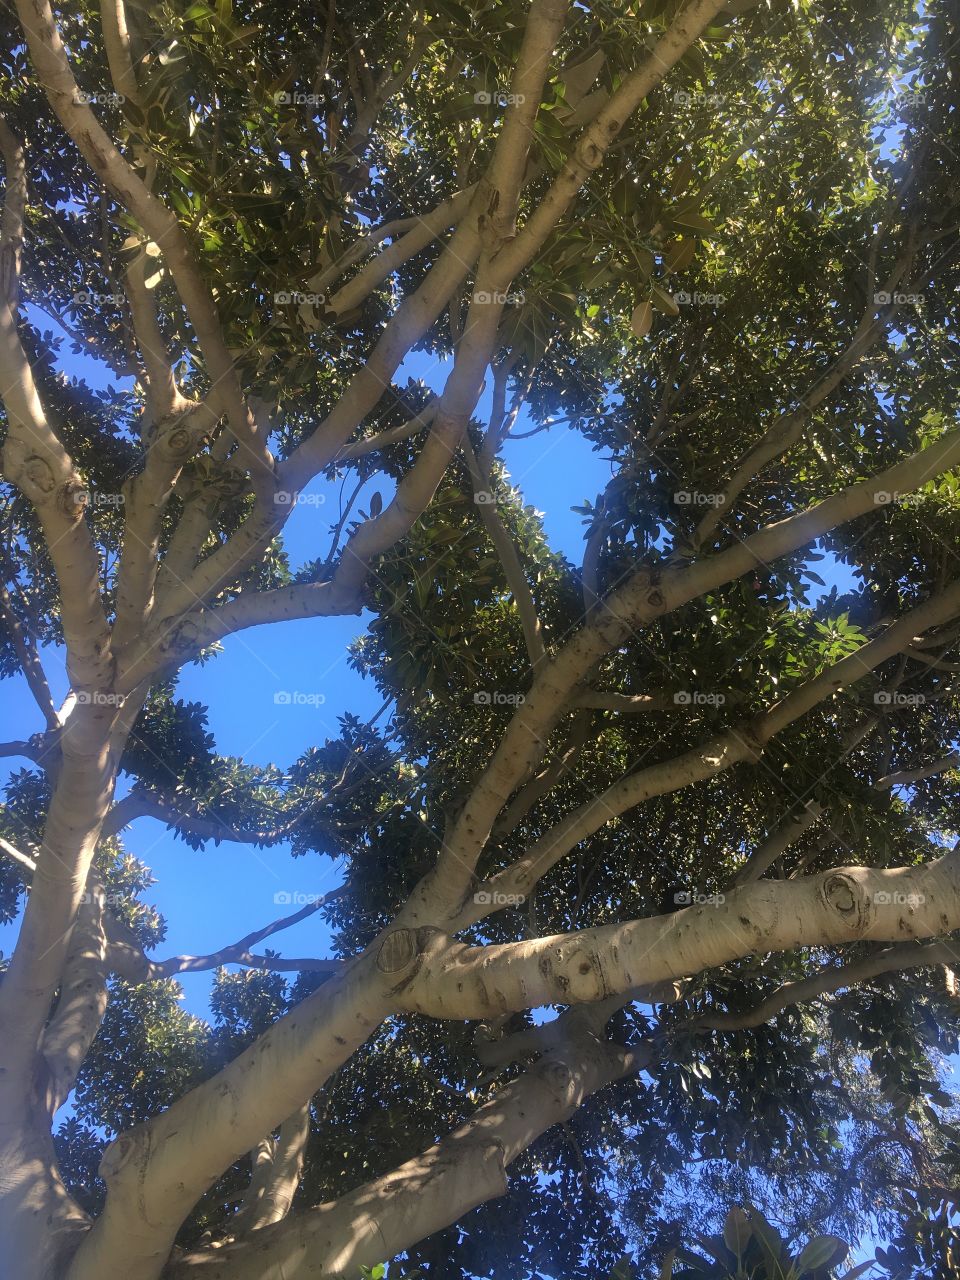 Under a beautiful Banyan tree!